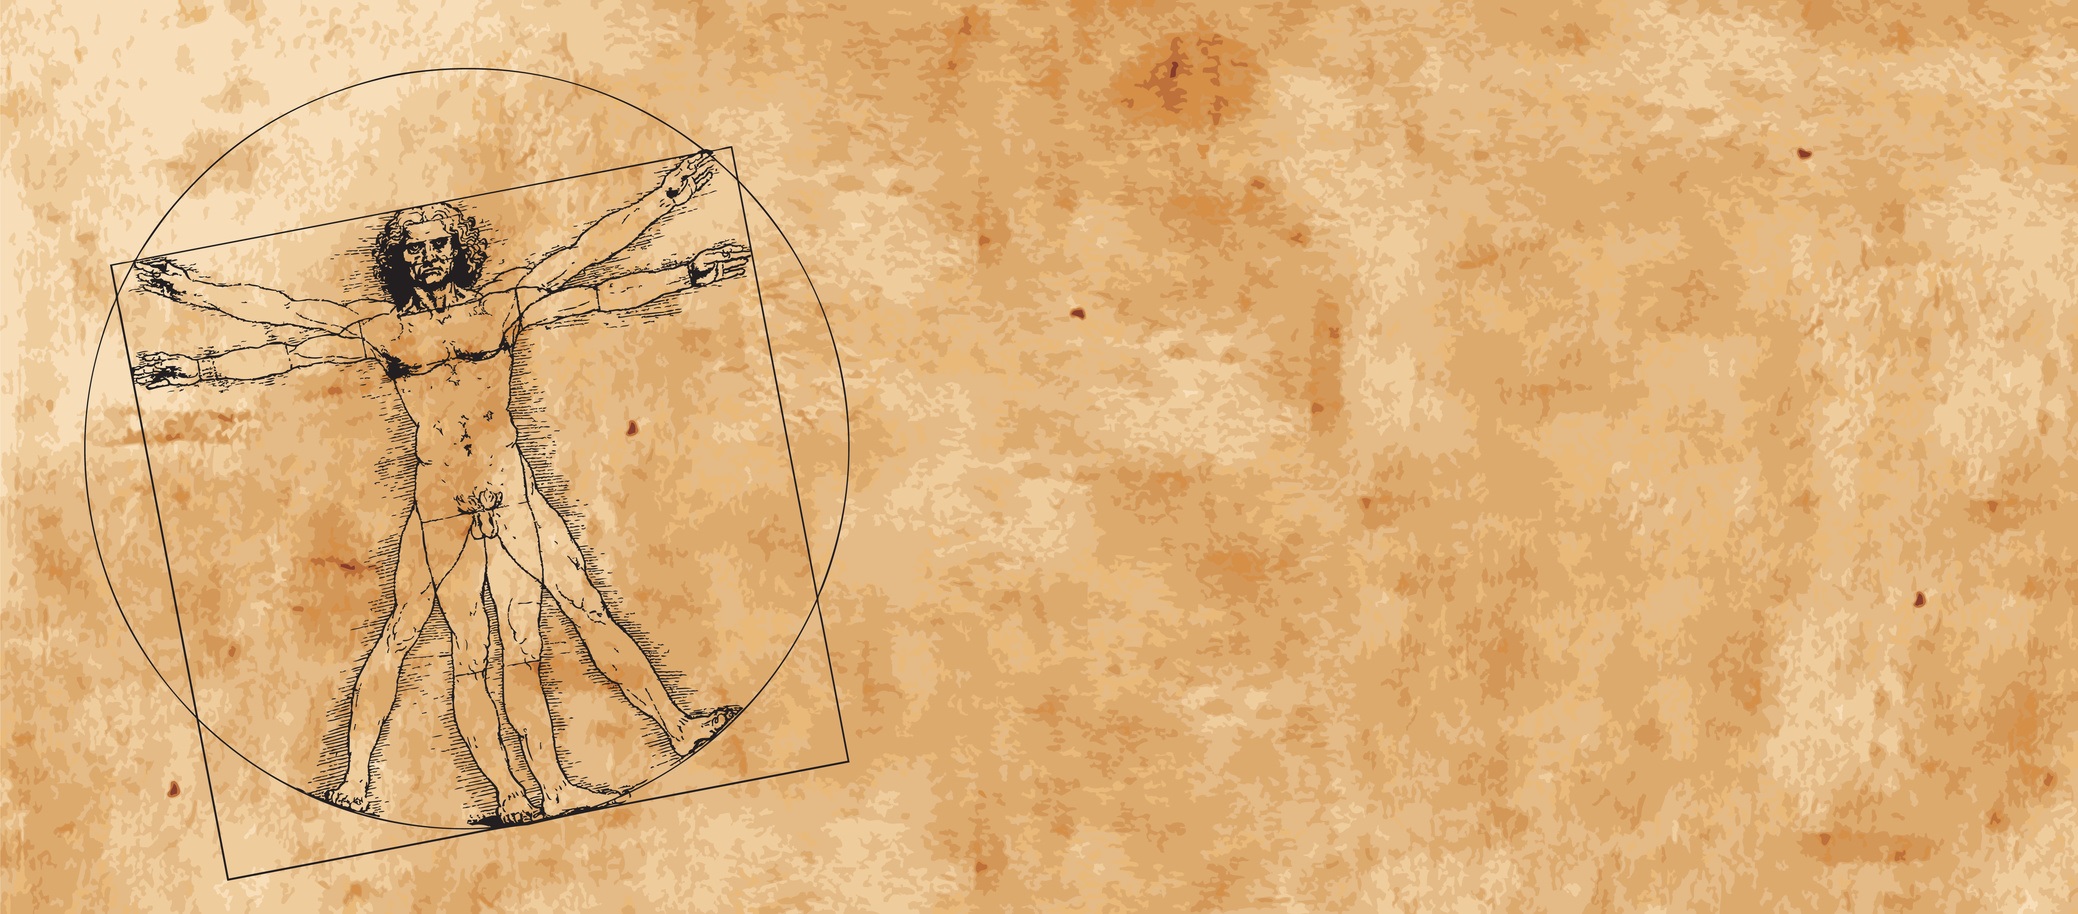 Léonard de Vinci est né à Vinci le 15 avril 1452 et est&nbsp;mort à Amboise le 2 mai 1519. Il fut à la fois peintre florentin, scientifique, inventeur, anatomiste, sculpteur, architecte, urbaniste, botaniste, musicien, poète, philosophe et écrivain. Un croquis d'un des ses manuscrits est le premier témoignage de l'existence des fossiles Paleodictyon. © HP_Photo, Fotolia